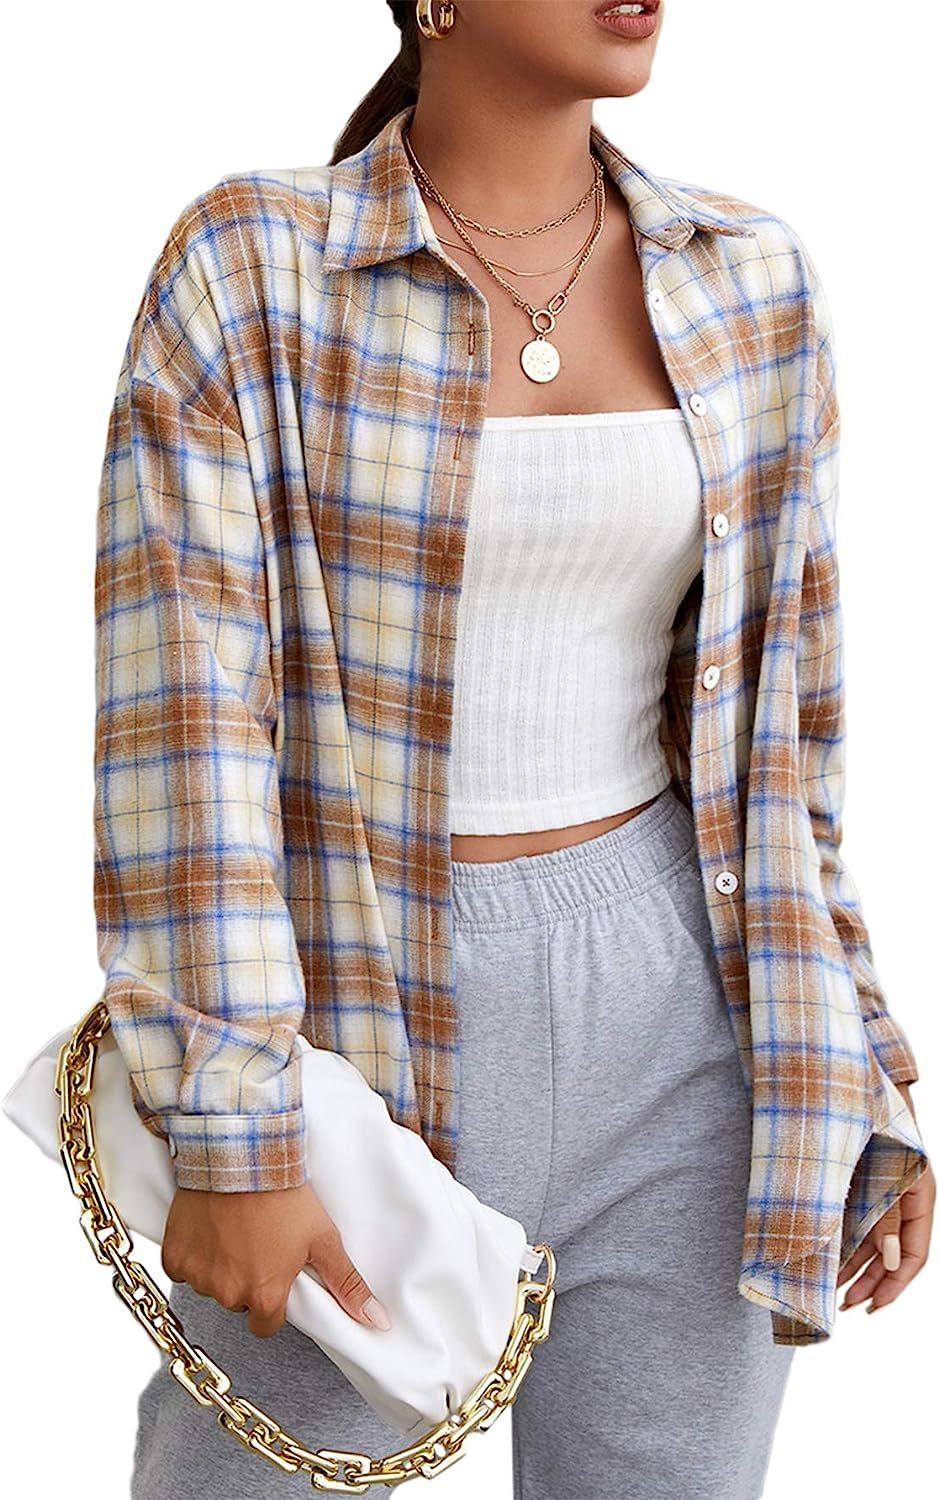 MakeMeChic Women's Plaid Shirts Oversized Flannels Shacket Jacket Multi Camel Small at Amazon Wom... | Amazon (US)